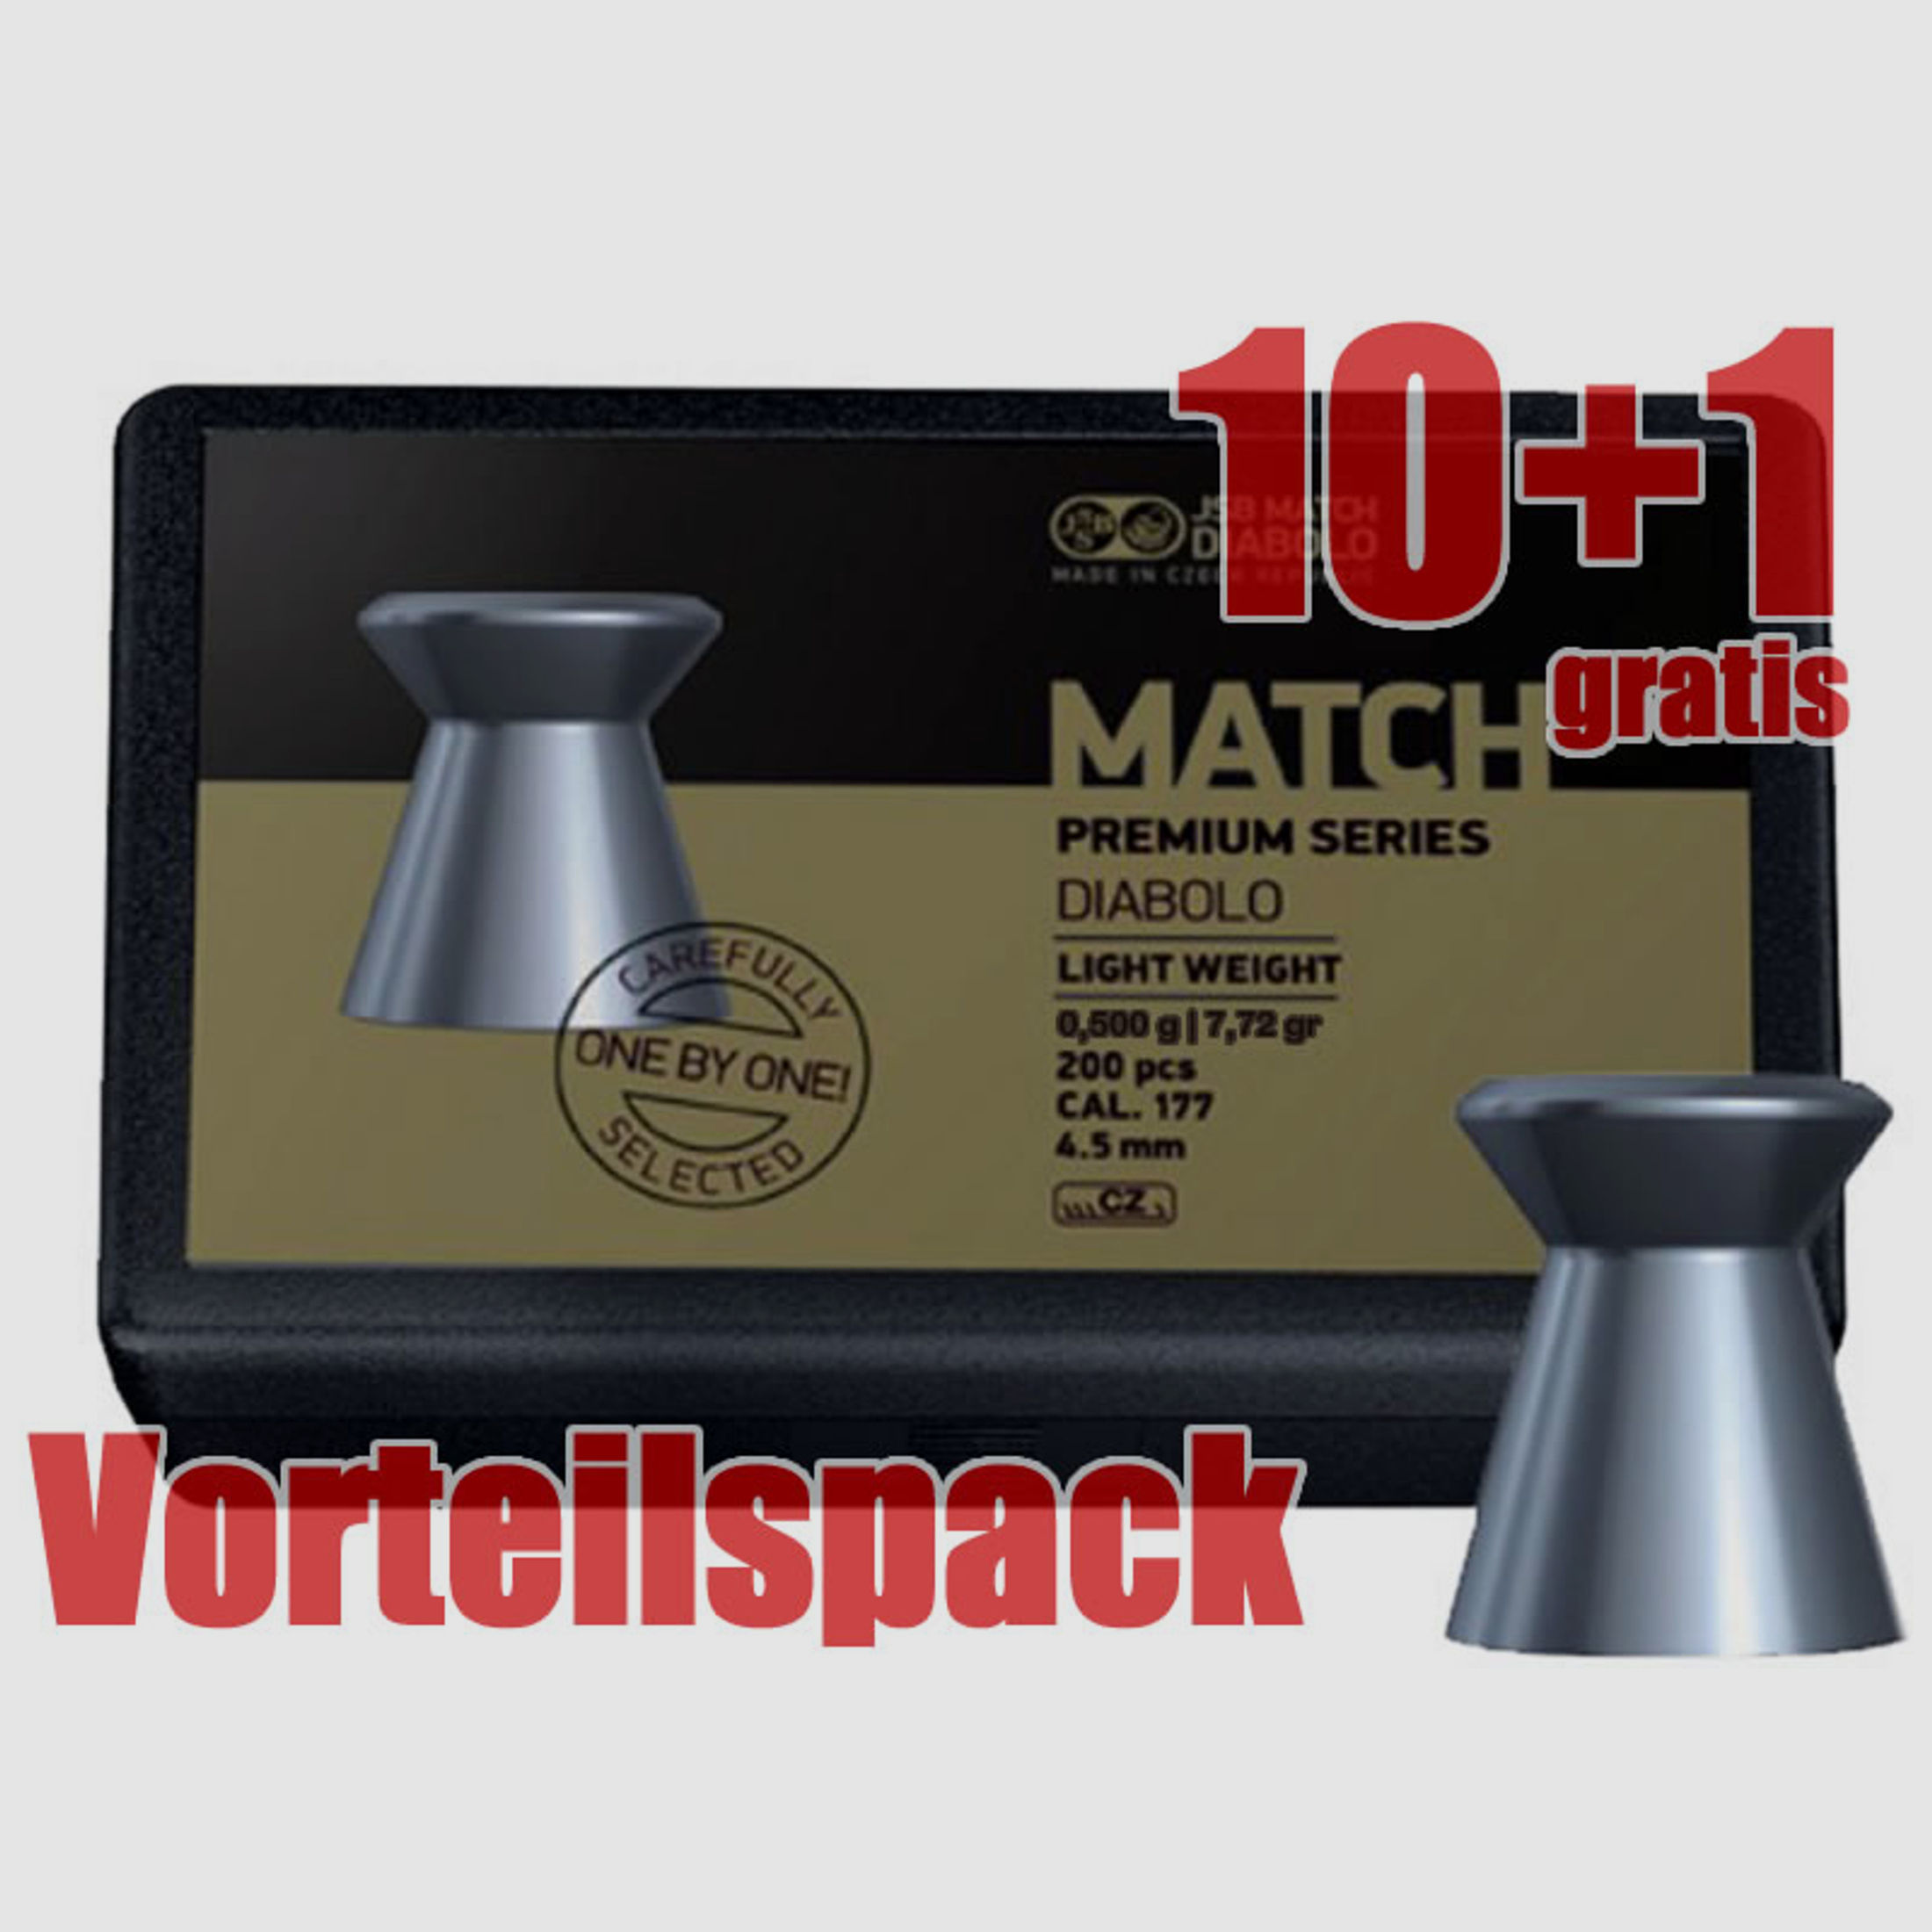 10+1 GRATIS x 200 StĂĽck Flachkopf Diabolo JSB MATCH PREMIUM, Kal. 4,50 mm, 0,500 g